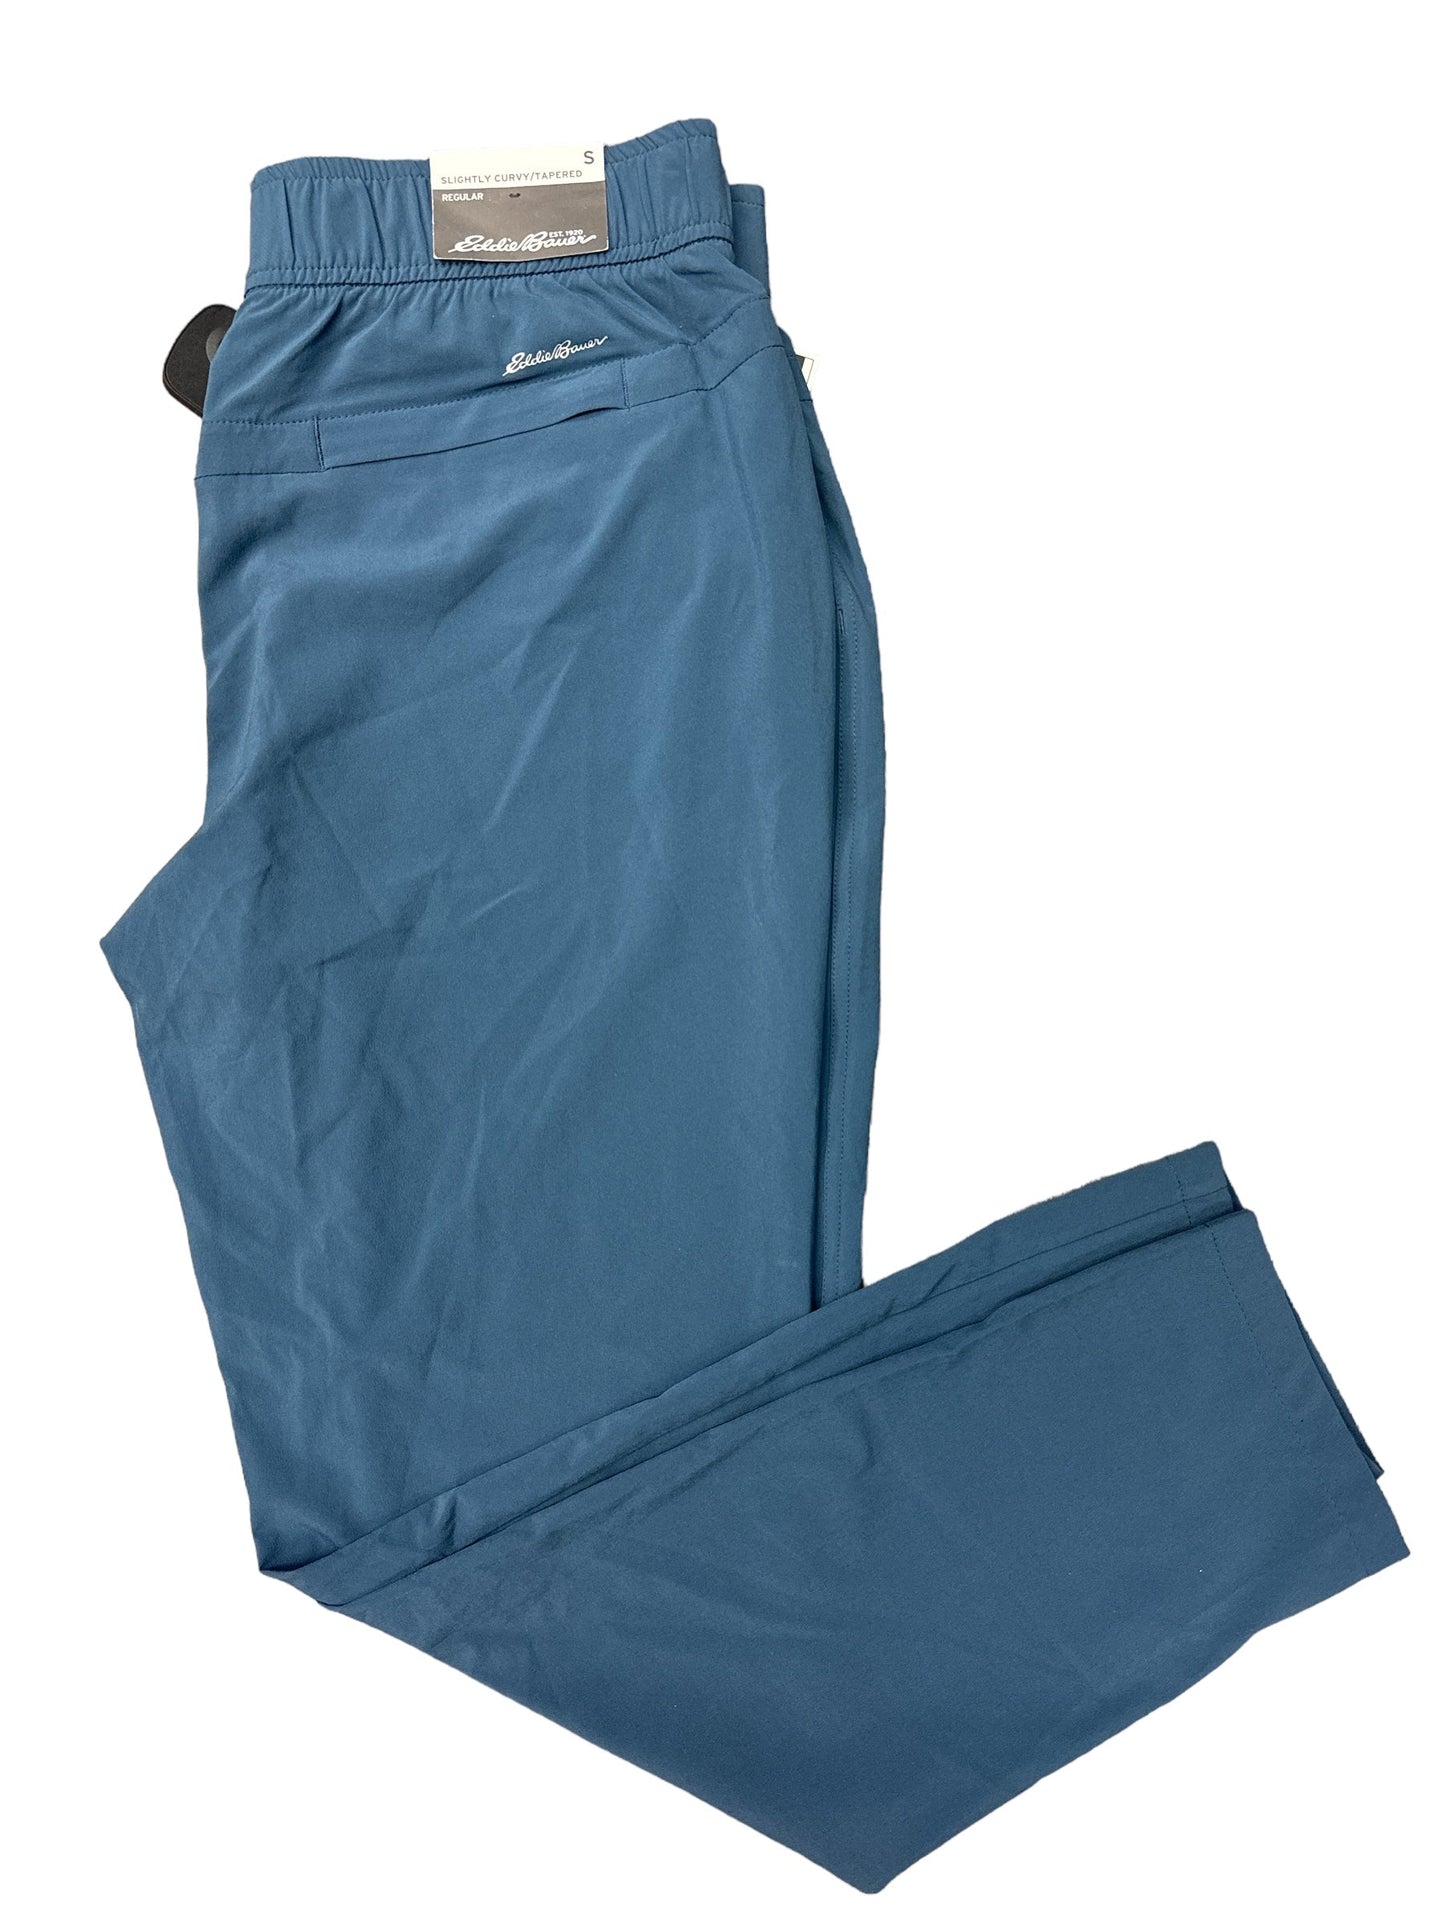 Blue Athletic Pants Eddie Bauer, Size S